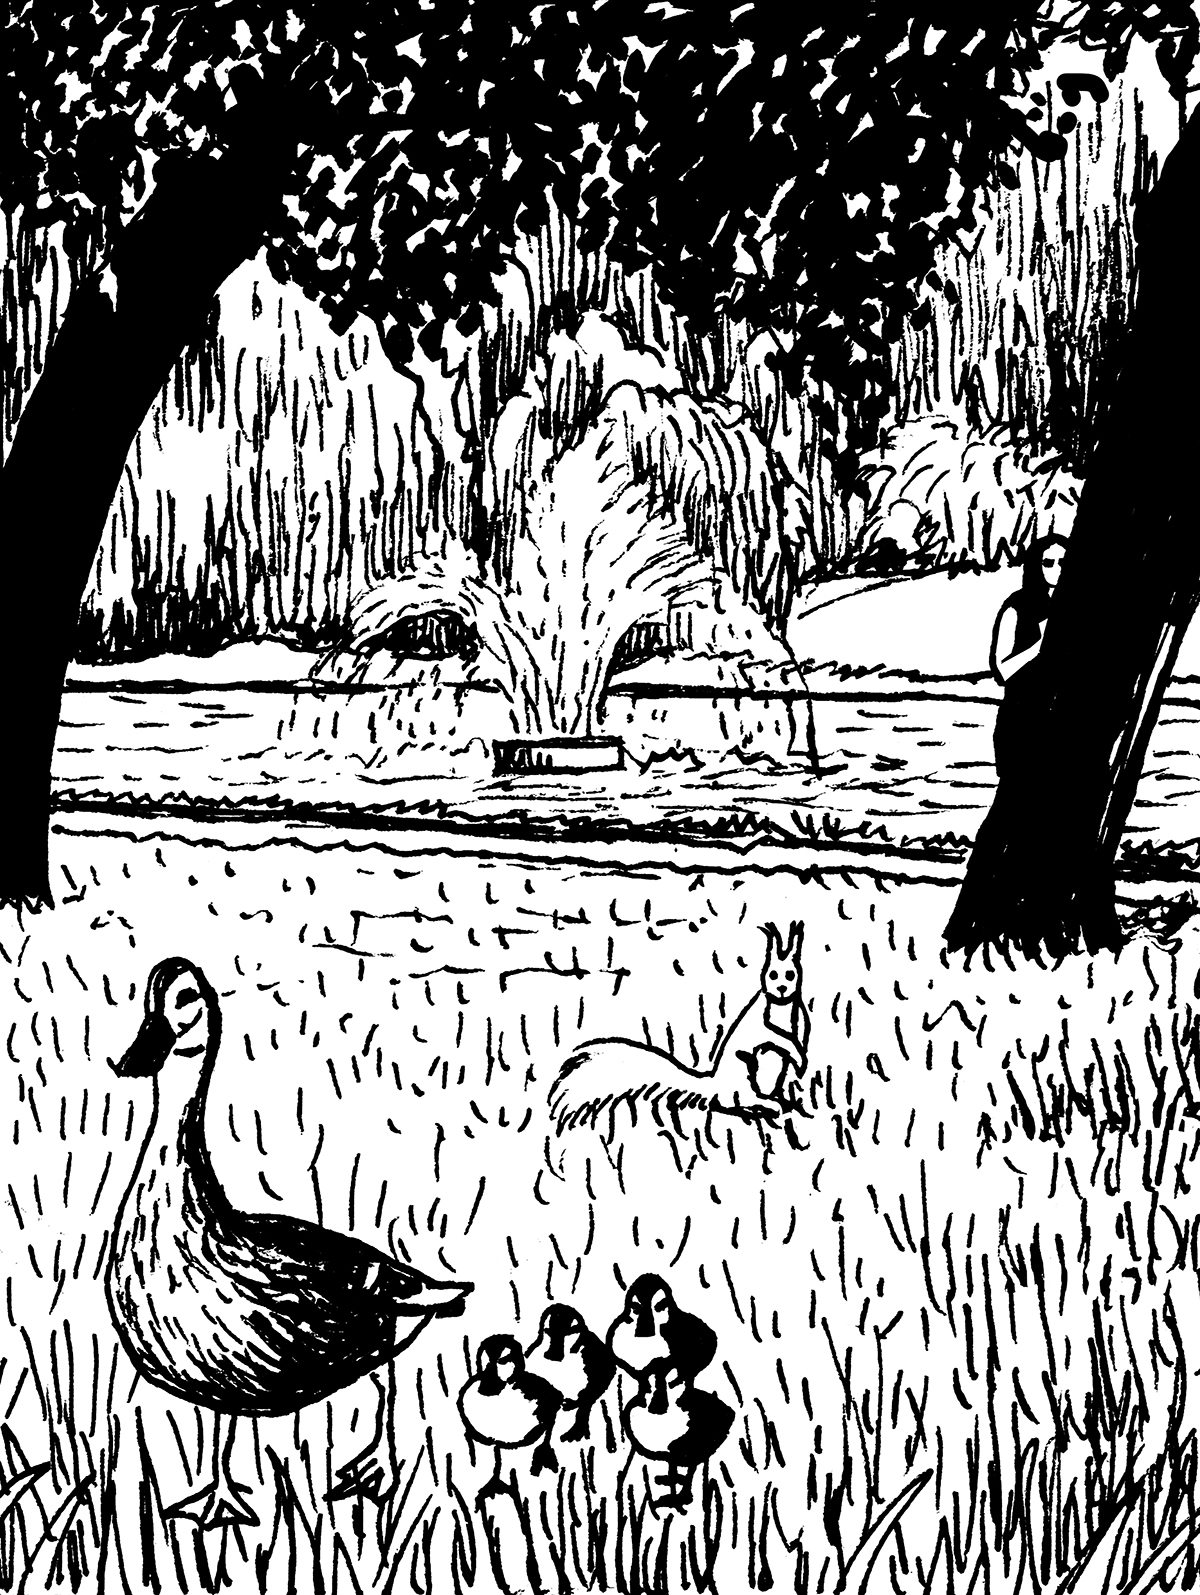 Na parkowym trawniku wiewiórka obserwuje kaczkę i jej cztery pisklęta. W tle widoczna skryta za drzewem kobieta, która obserwuje zwierzęta, oraz staw z tryskającą wodą otoczony bujnymi drzewami. 